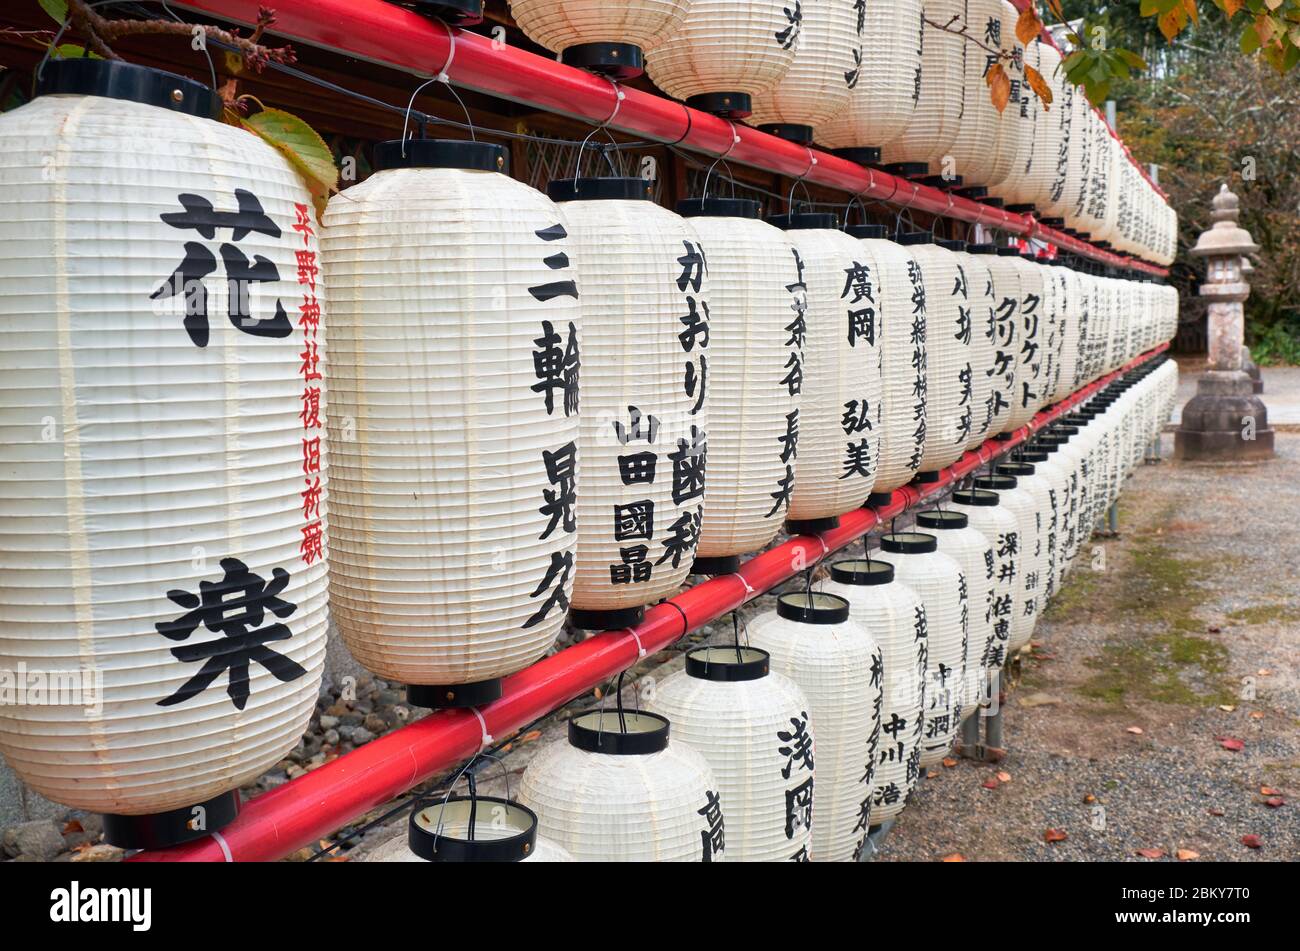 KYOTO, JAPAN - 17. OKTOBER 2019: Der Blick auf Hunderte traditionelle weiße Papierhellungen (Chochin) am Hirano-Schrein. Kyoto. Japan Stockfoto